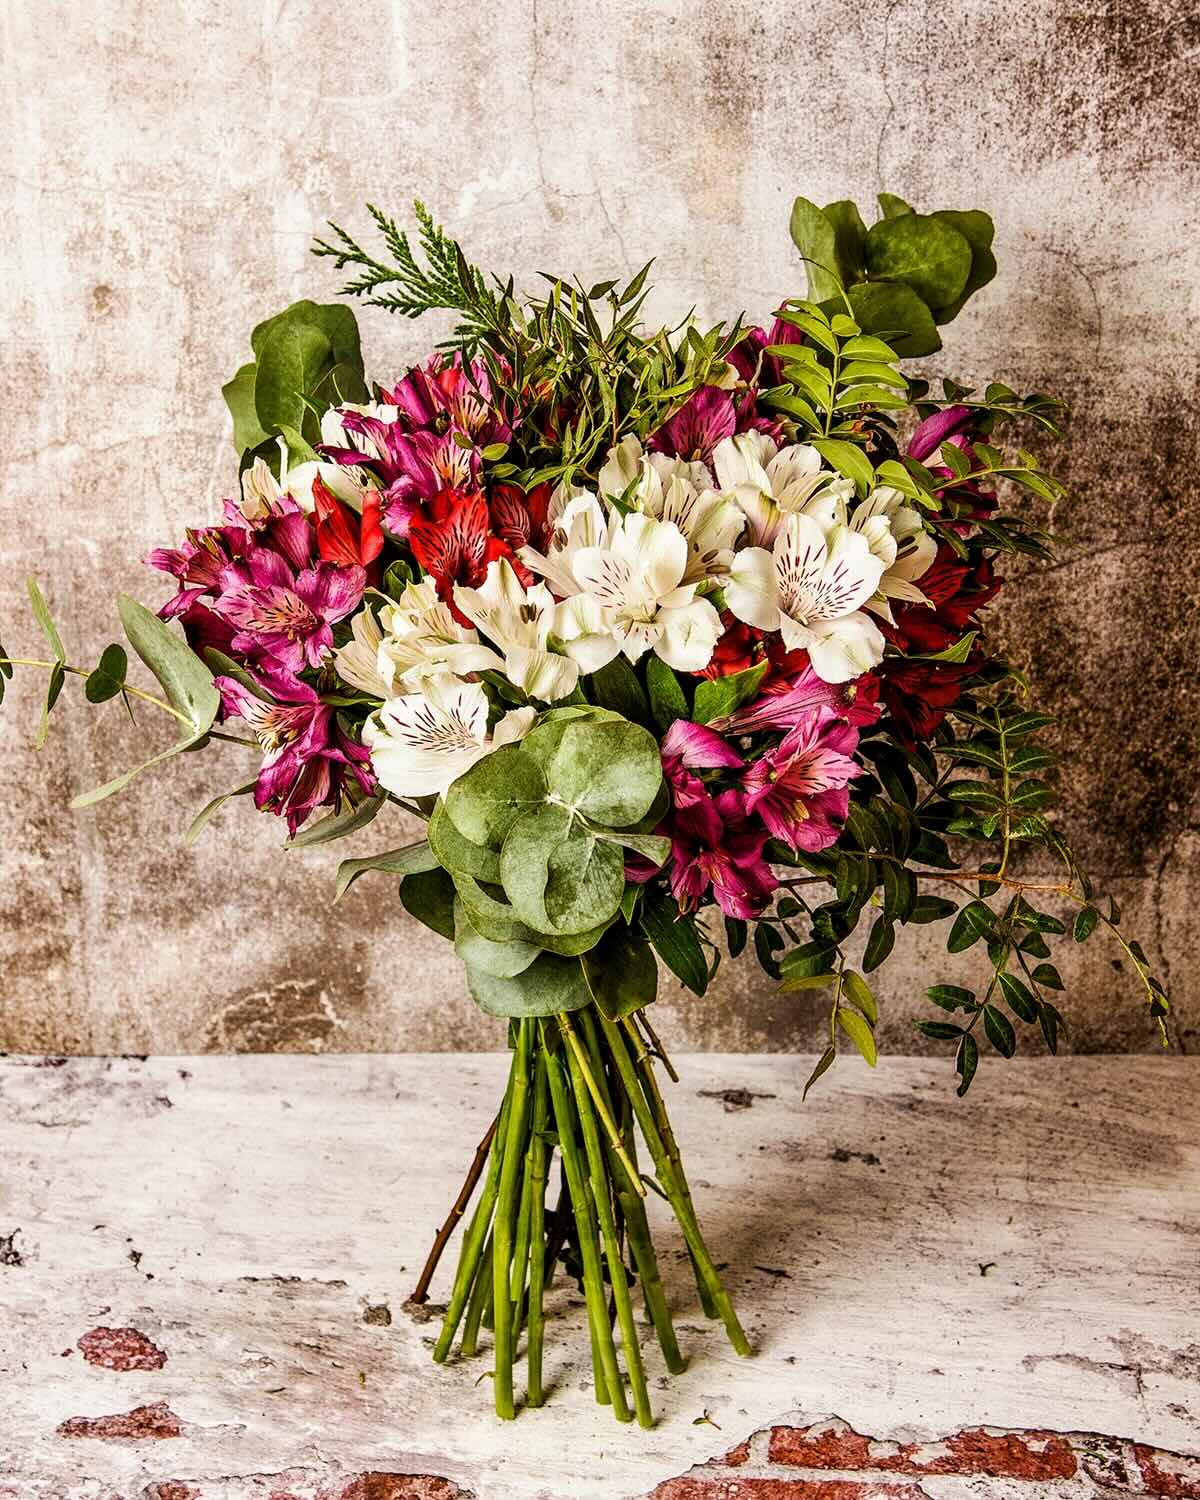 Comprar ramo de novia con flores preservadas para envío a domicilio.